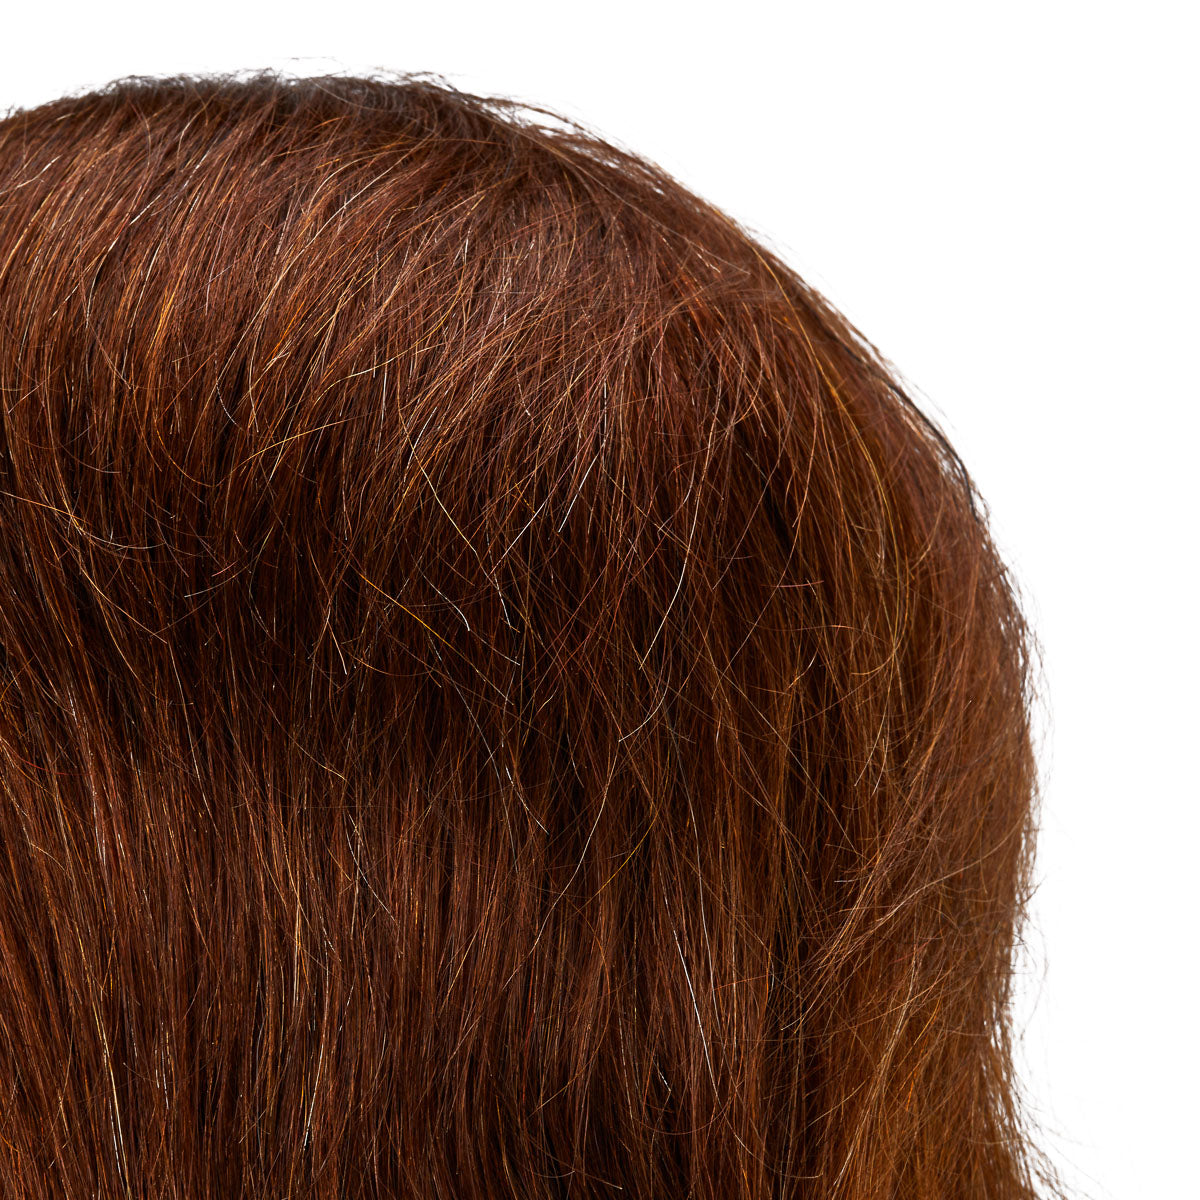 Gabbiano WZ3 Hairdressing Training Head, Natural Hair, Colour 4#, Length 8"